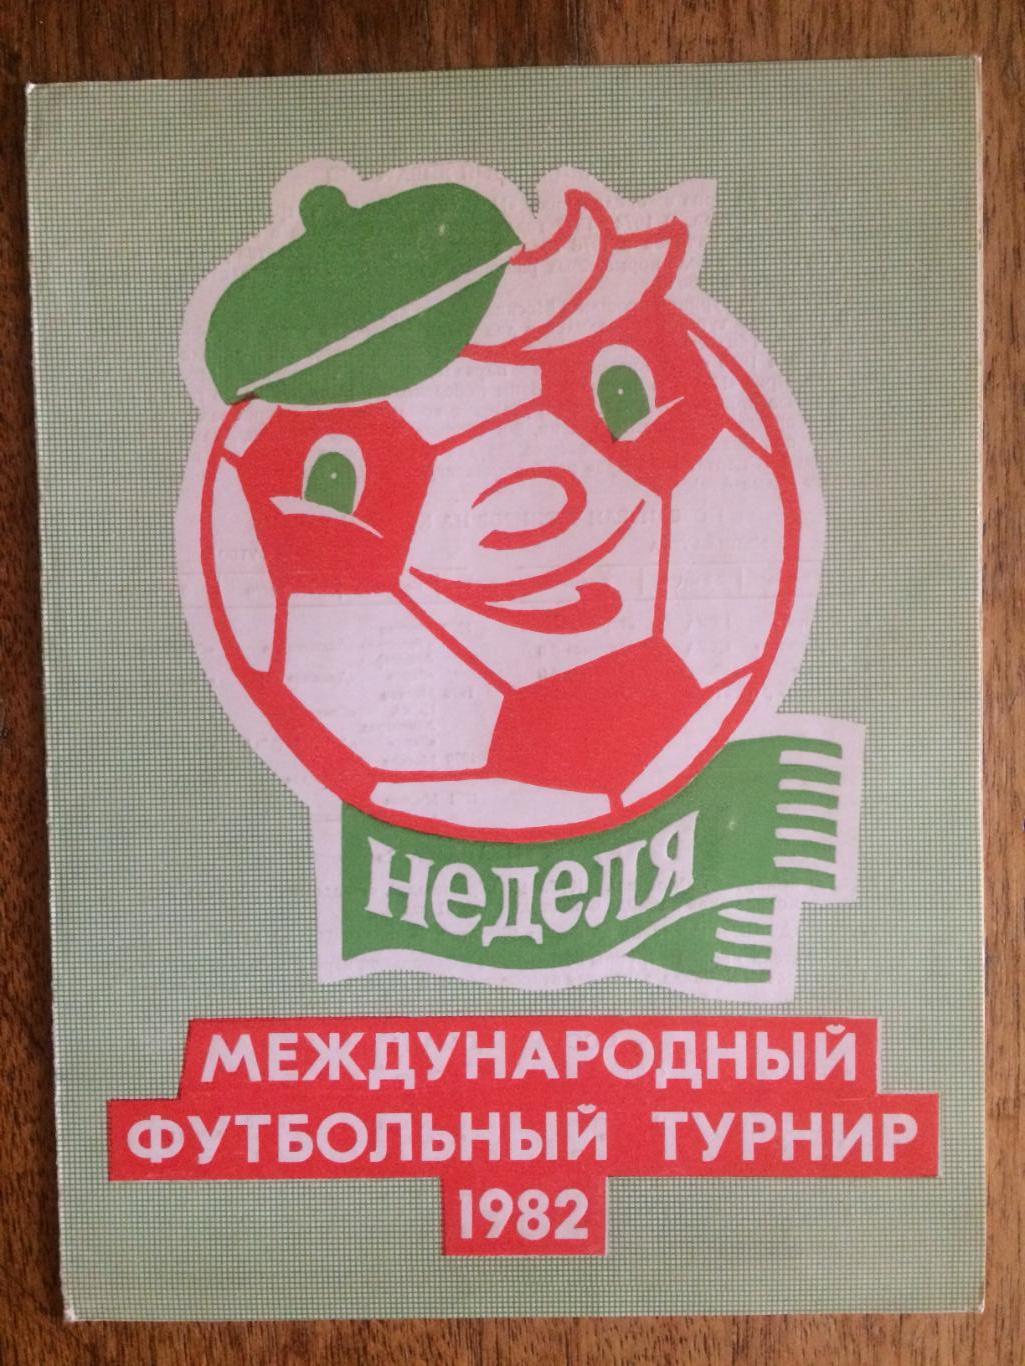 Международный турнир Неделя Спартак, Динамо Москва,Кубань,Берлин 1982